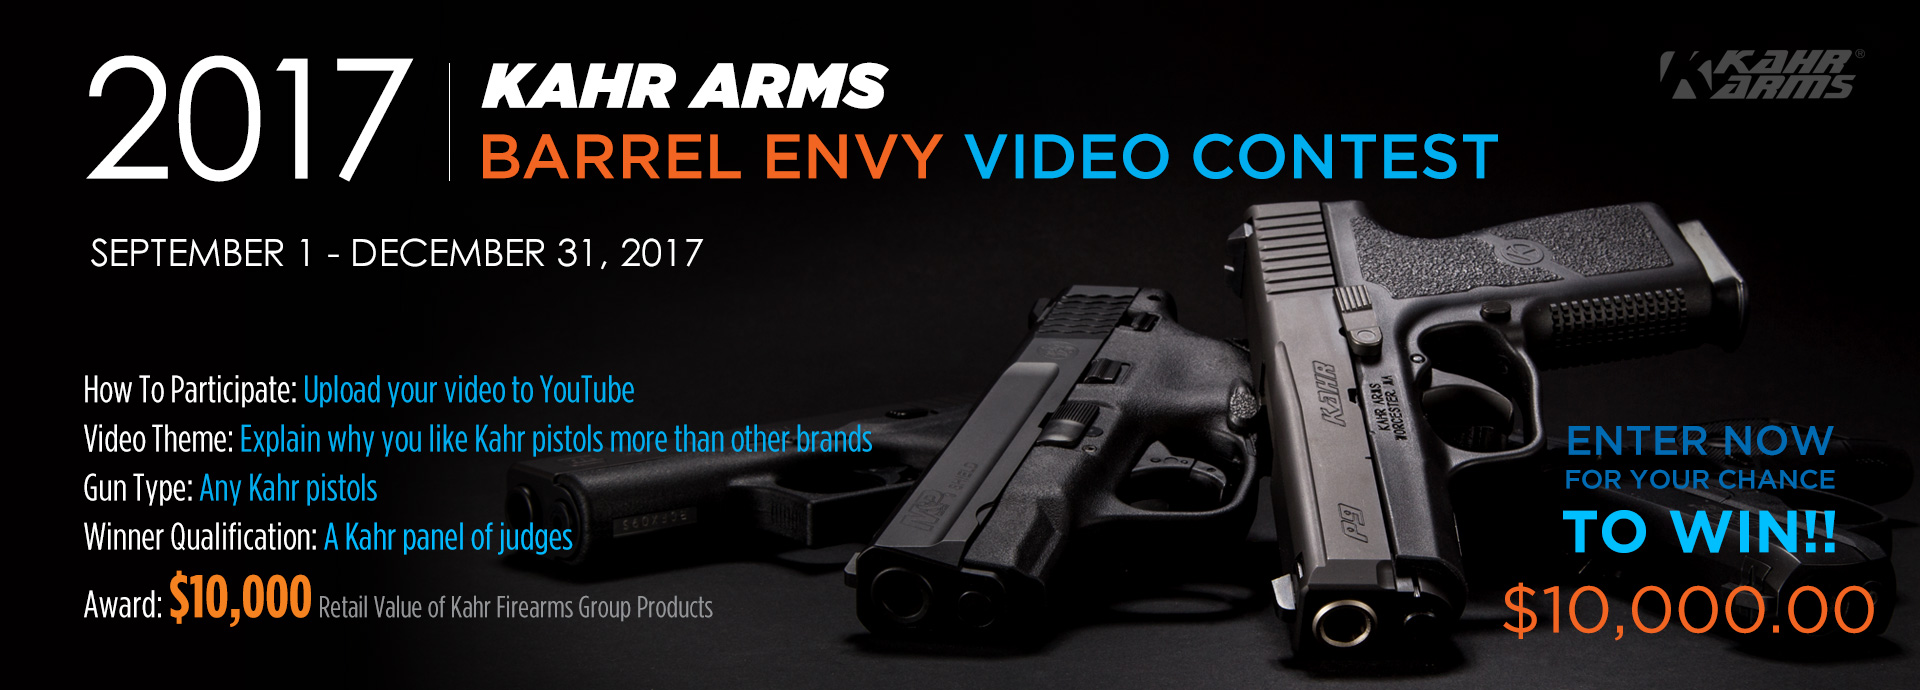 KAHR ARMS Barrel Envy Video Contest